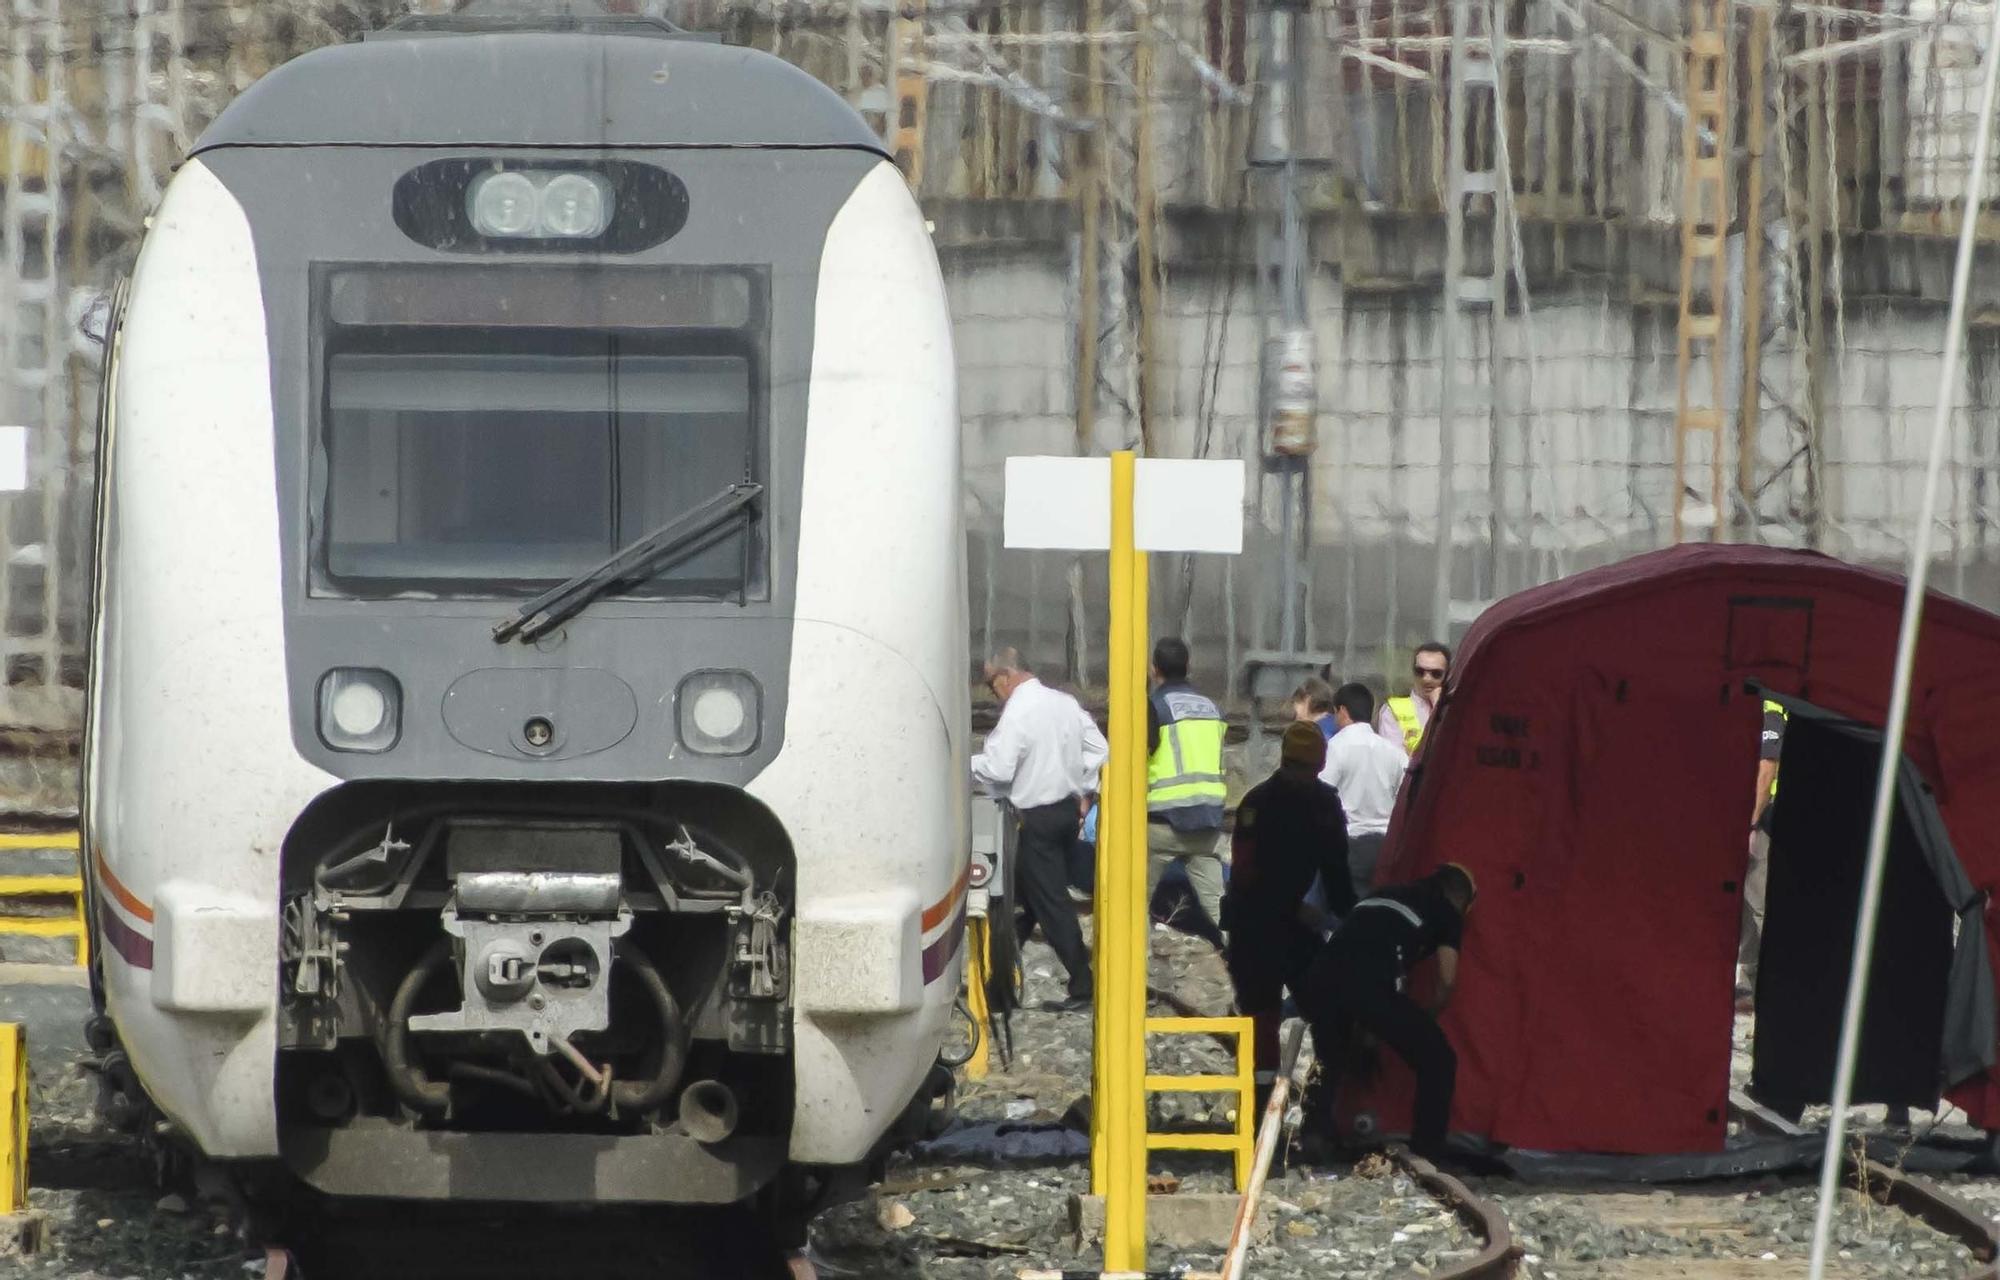 Hallan el cuerpo sin vida de Álvaro Prieto entre dos trenes en Sevilla